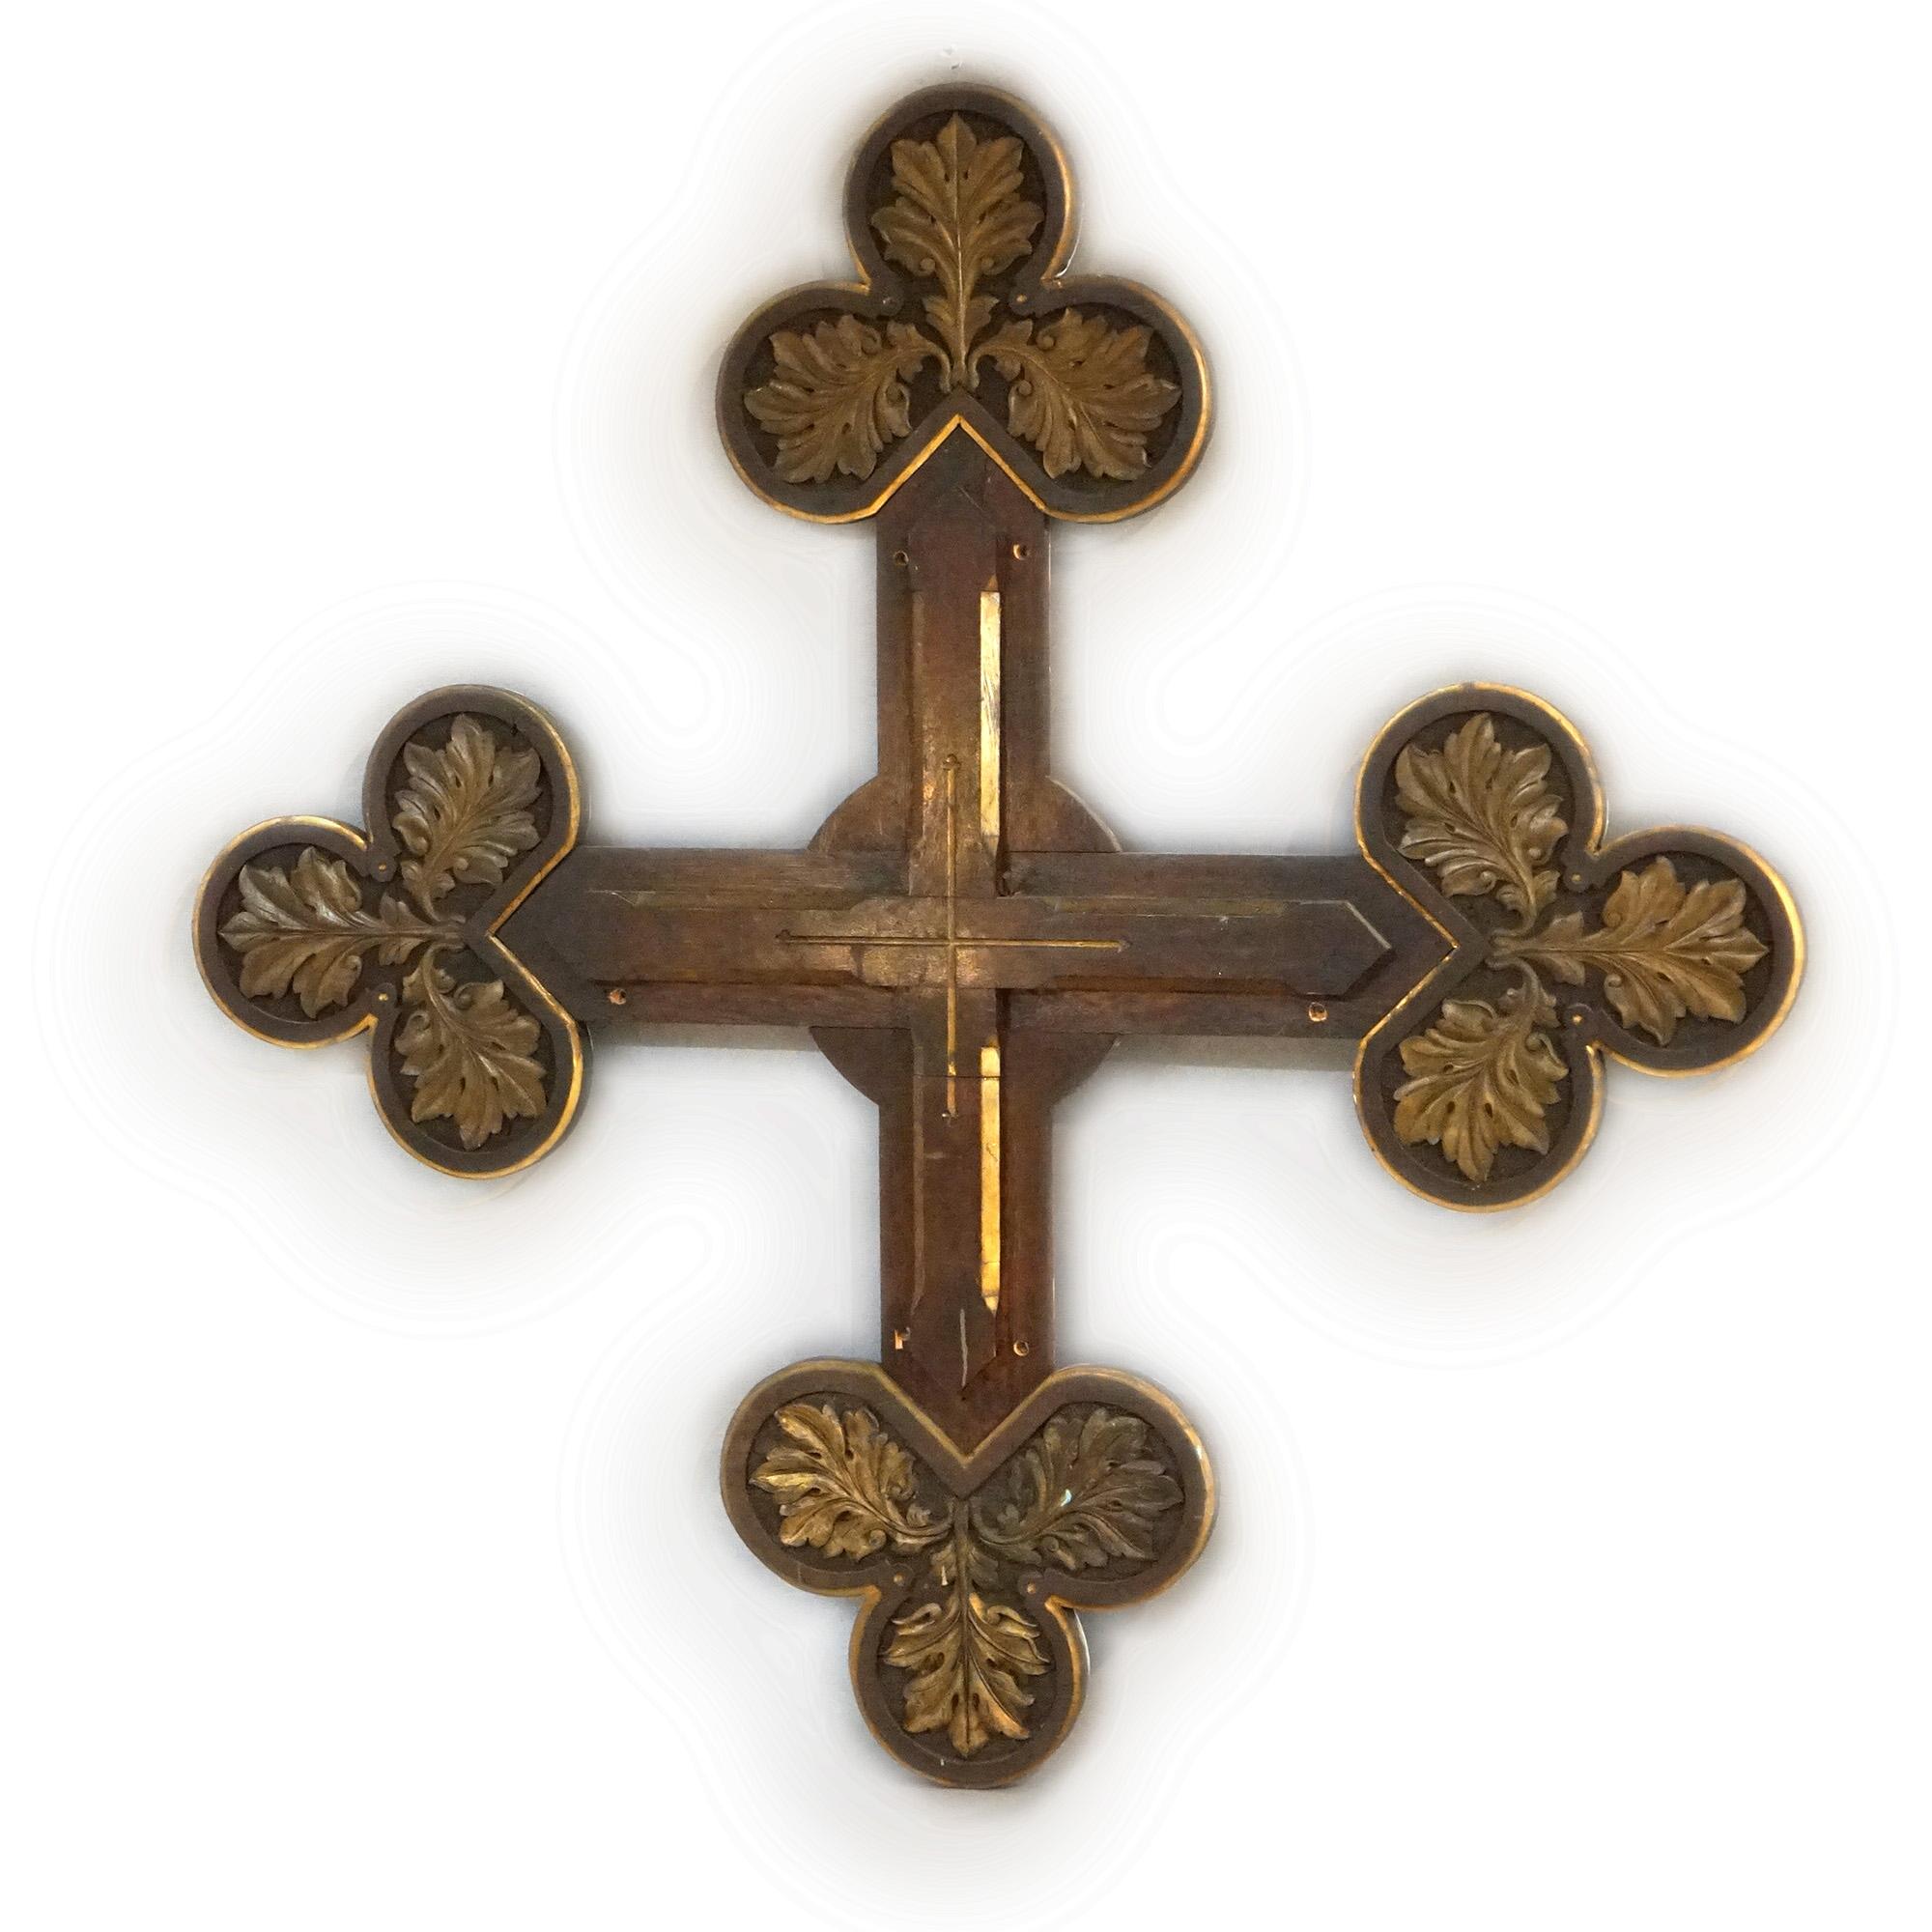 Une monumentale croix gothique antique offre une croix sculptée et polychromée de feuillages soulignés de dorures, 19e siècle.

Dimensions - 57 